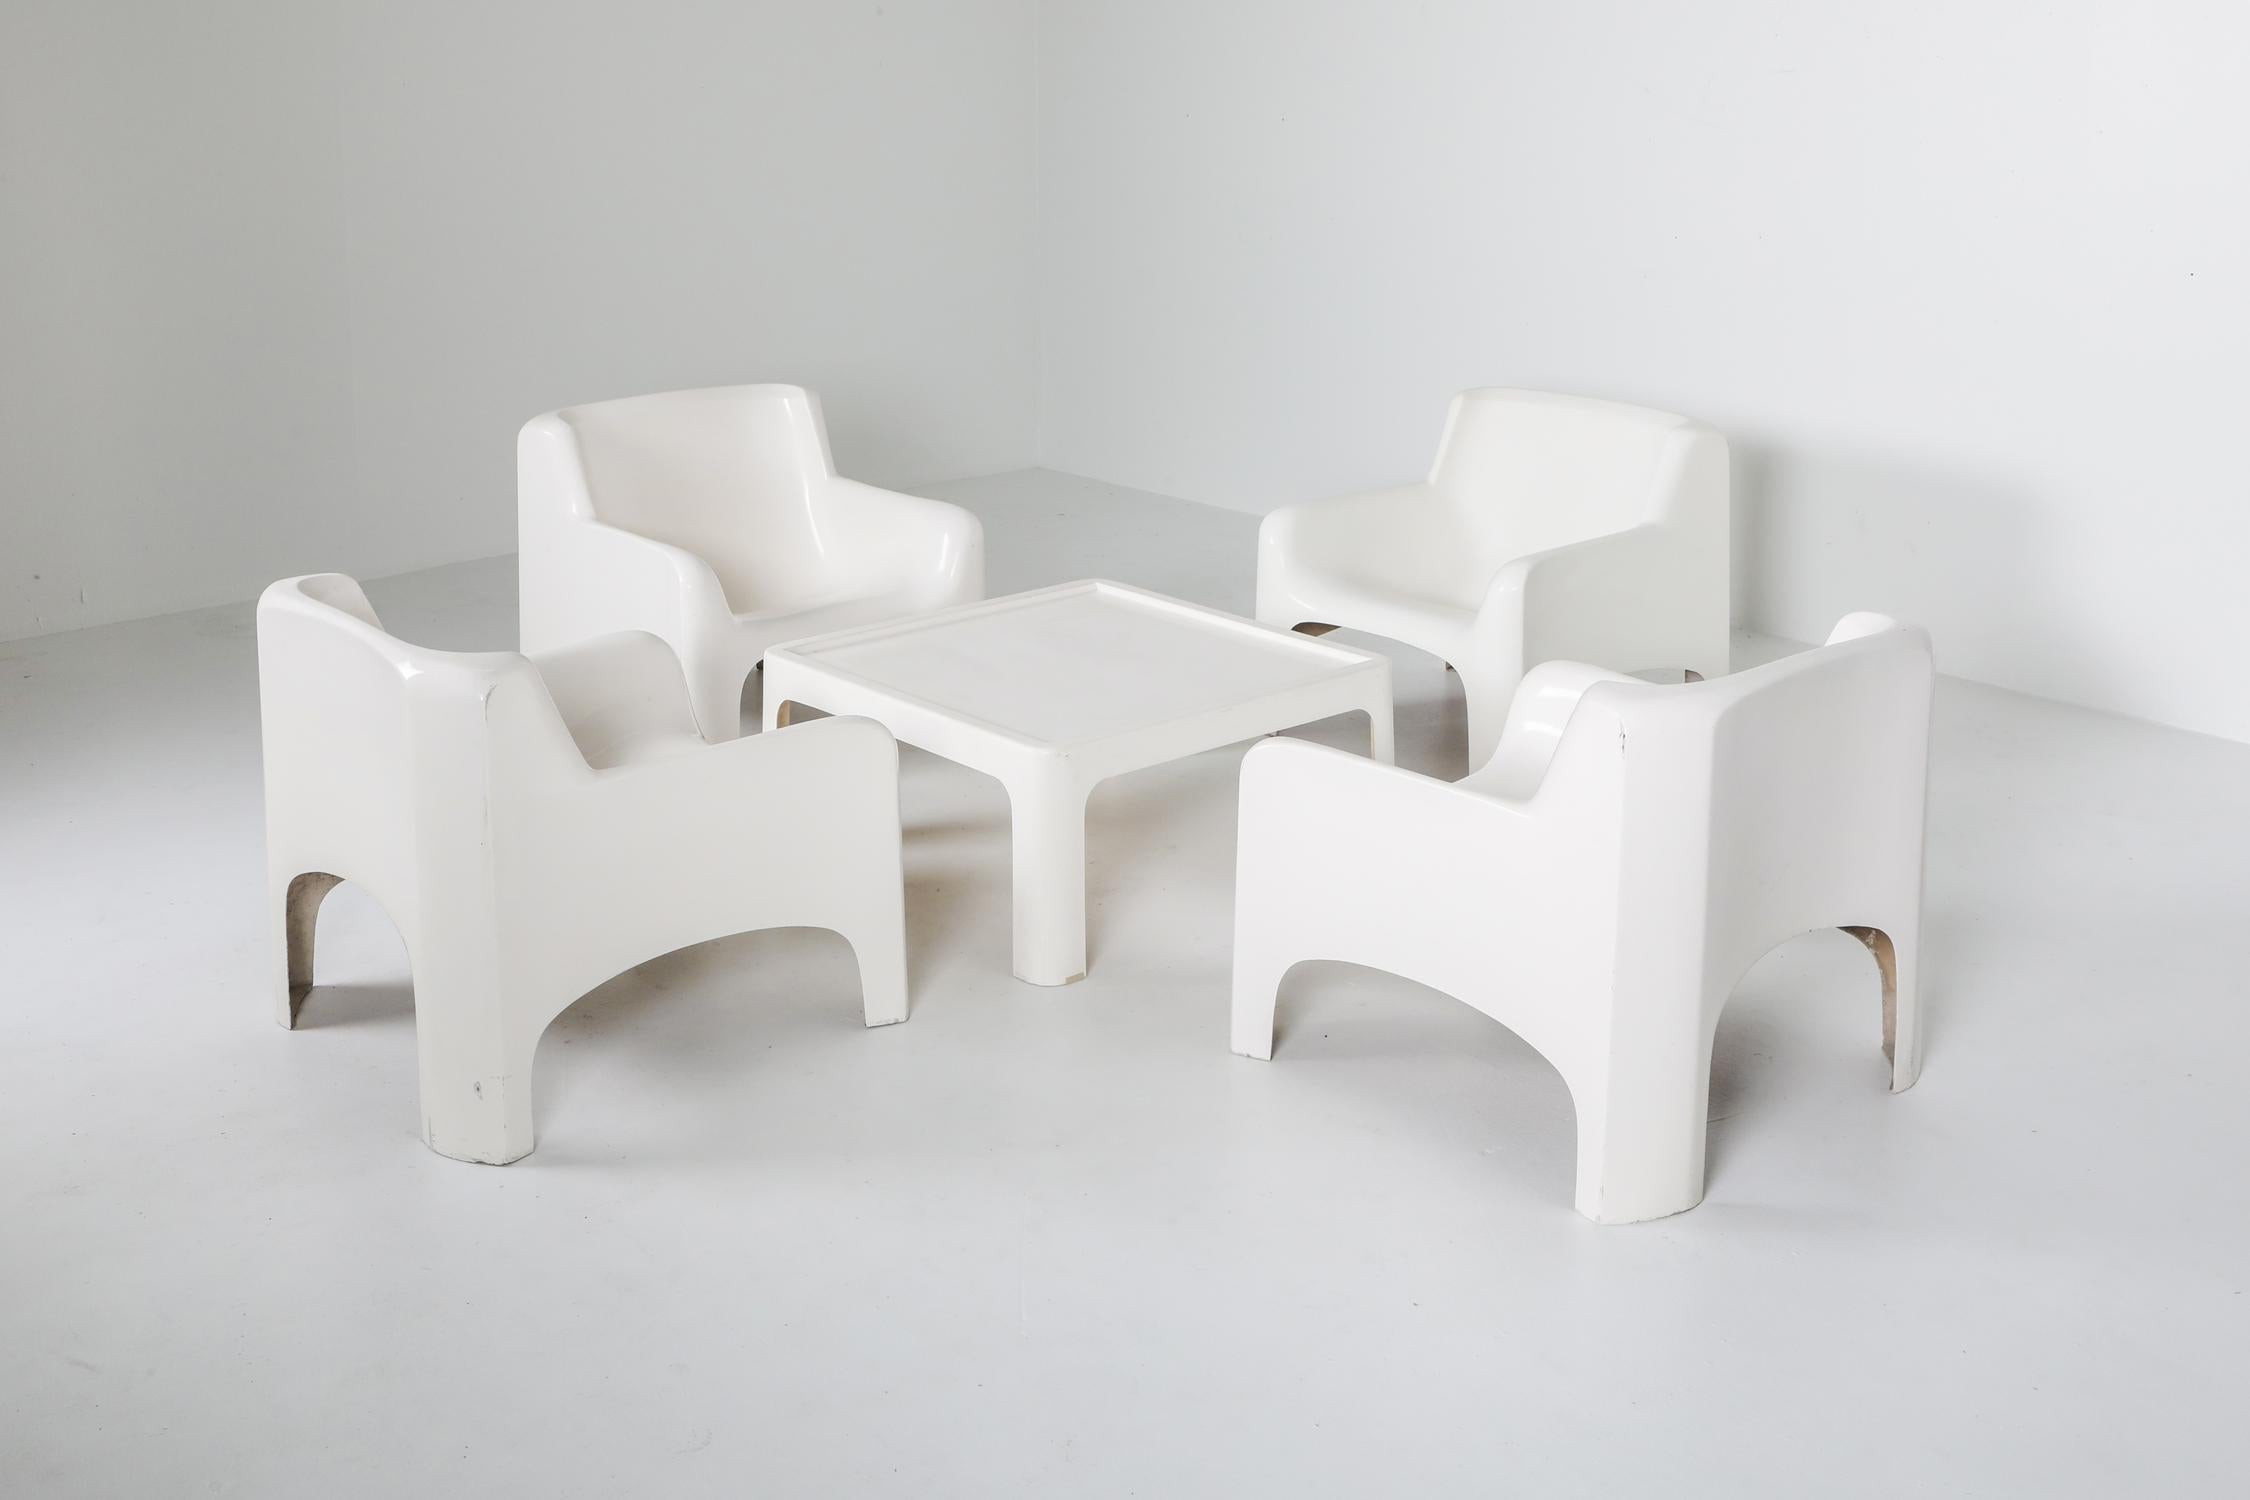 Carlo Bartali, modèle 'Solar', Arflex, Italie, 1965, ensemble de quatre fauteuils avec table.

Fibre de verre et résine polyester avec finition laquée
Ces élégantes chaises longues de Carlo Bartoli ont été fabriquées en Italie par Arflex et